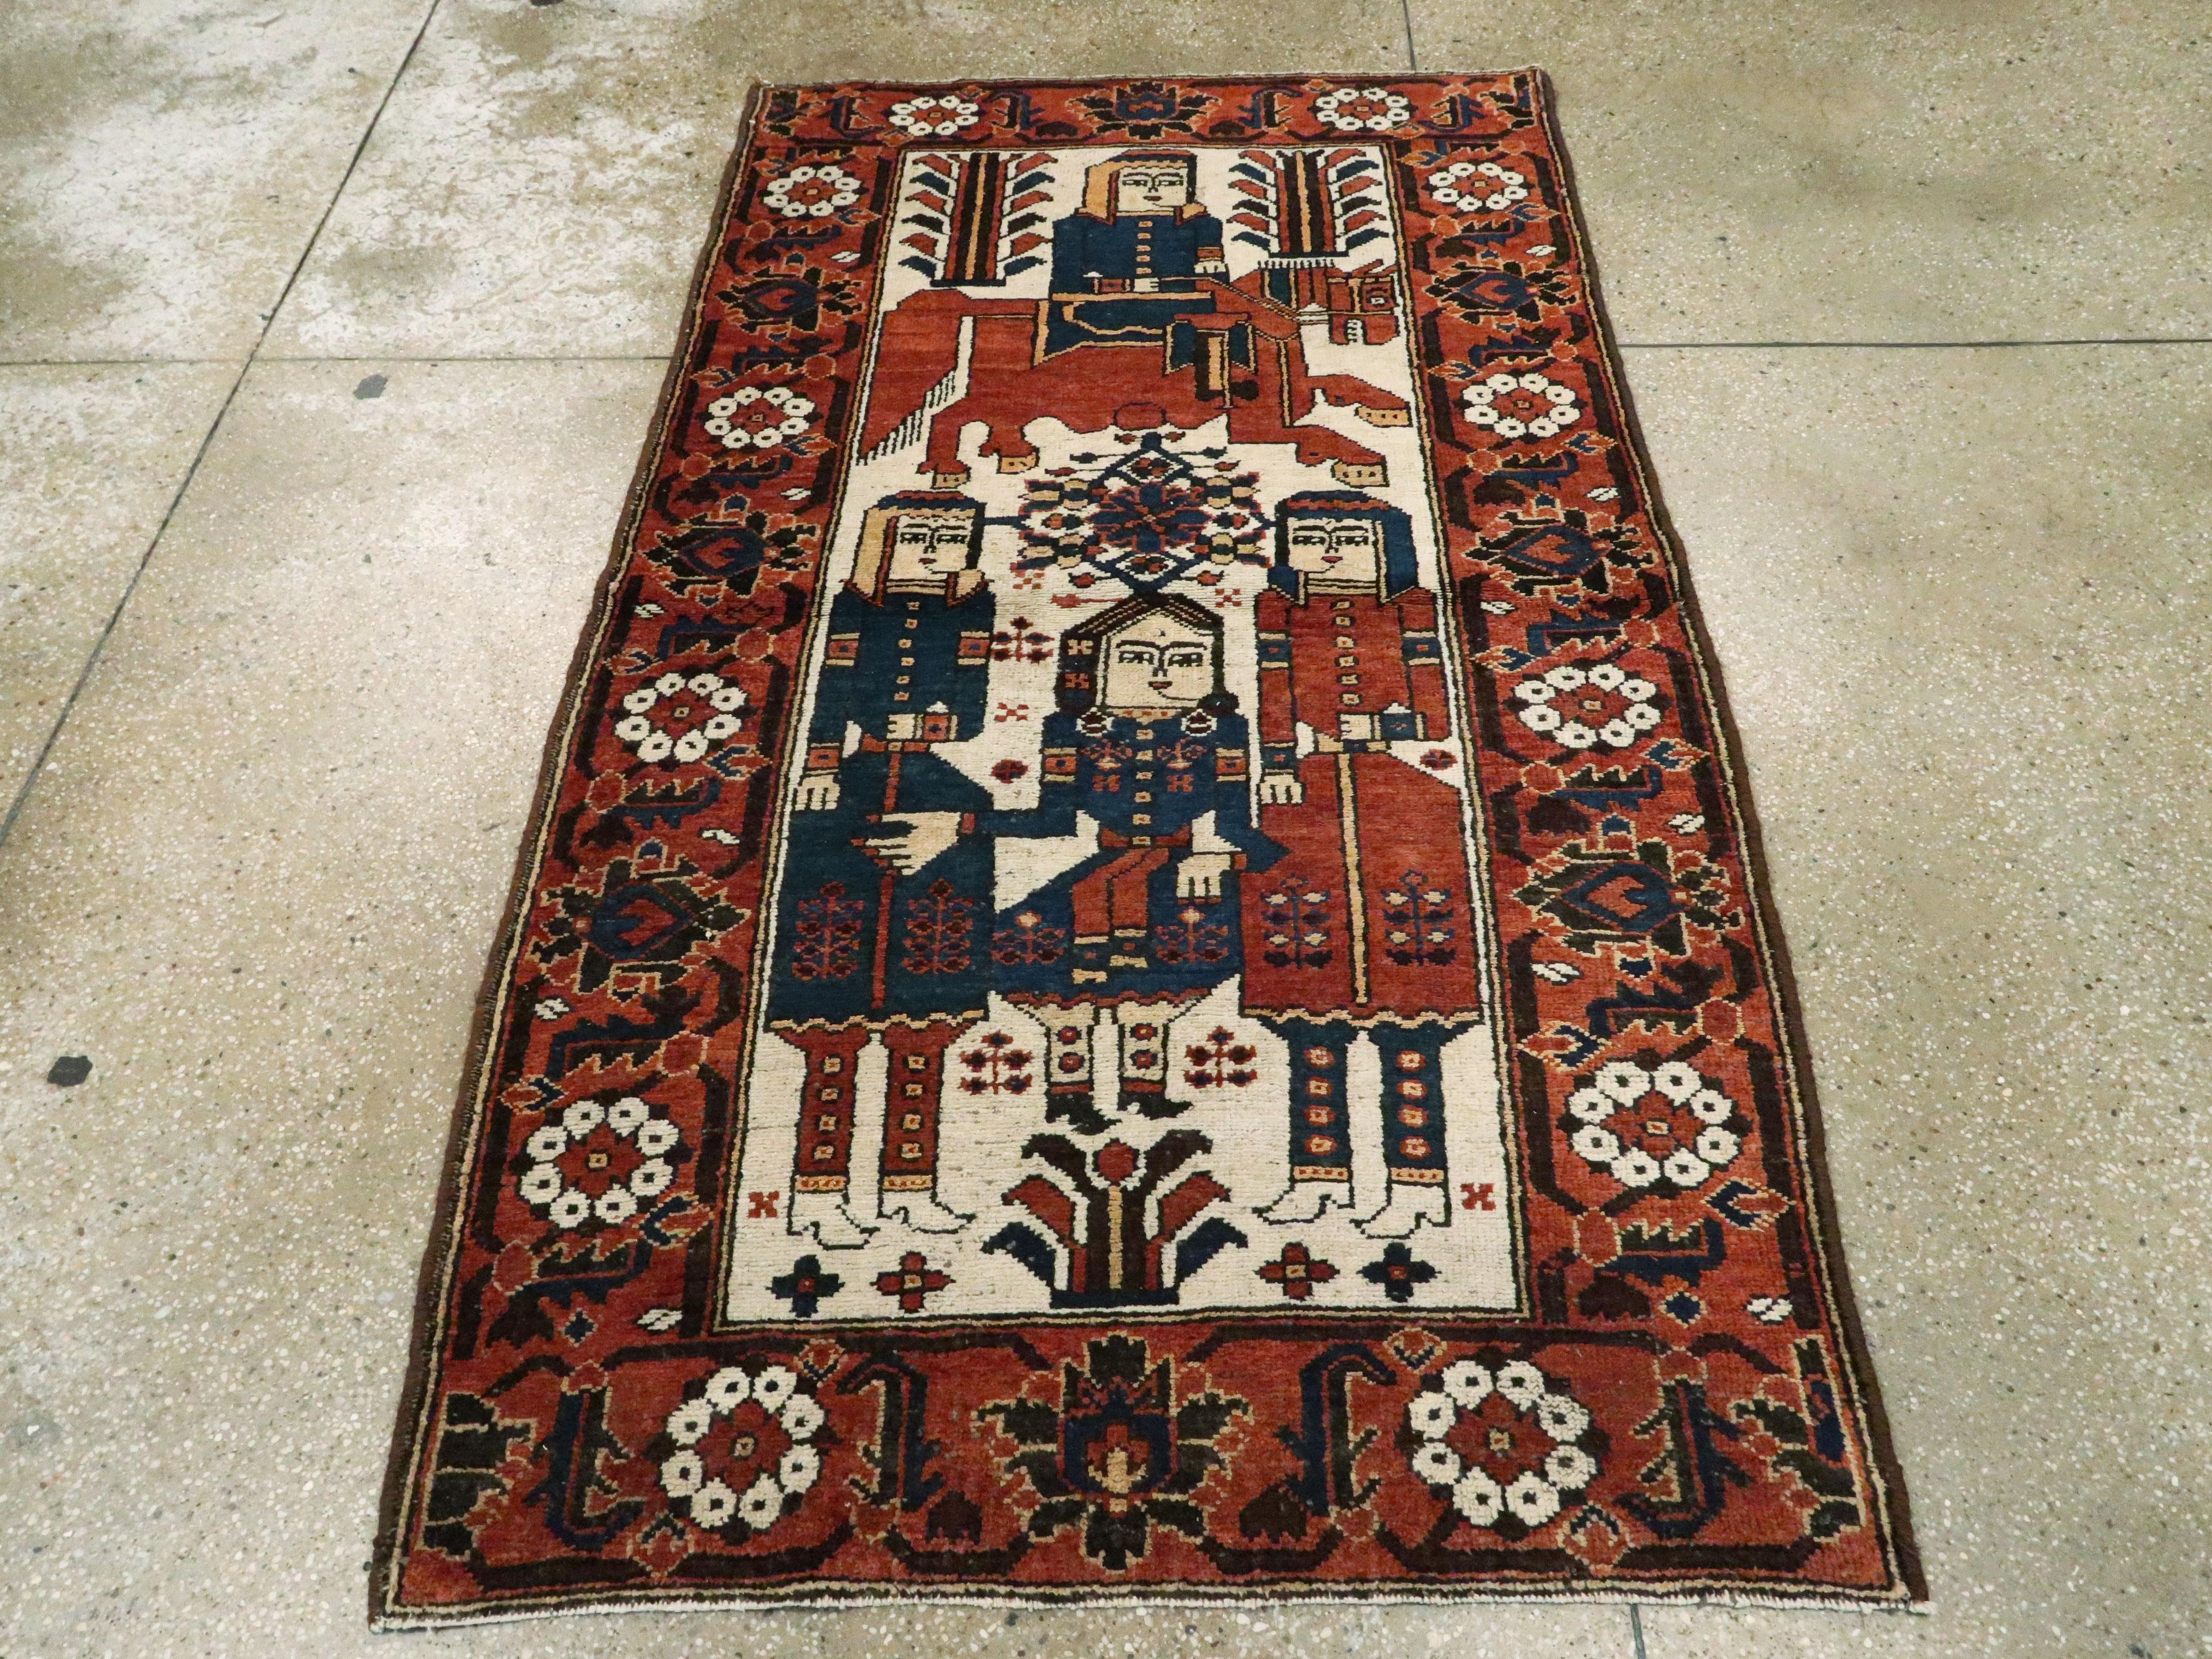 Un tapis vintage persan Bakhtiari pictural du milieu du 20e siècle.

Mesures : 3' 10